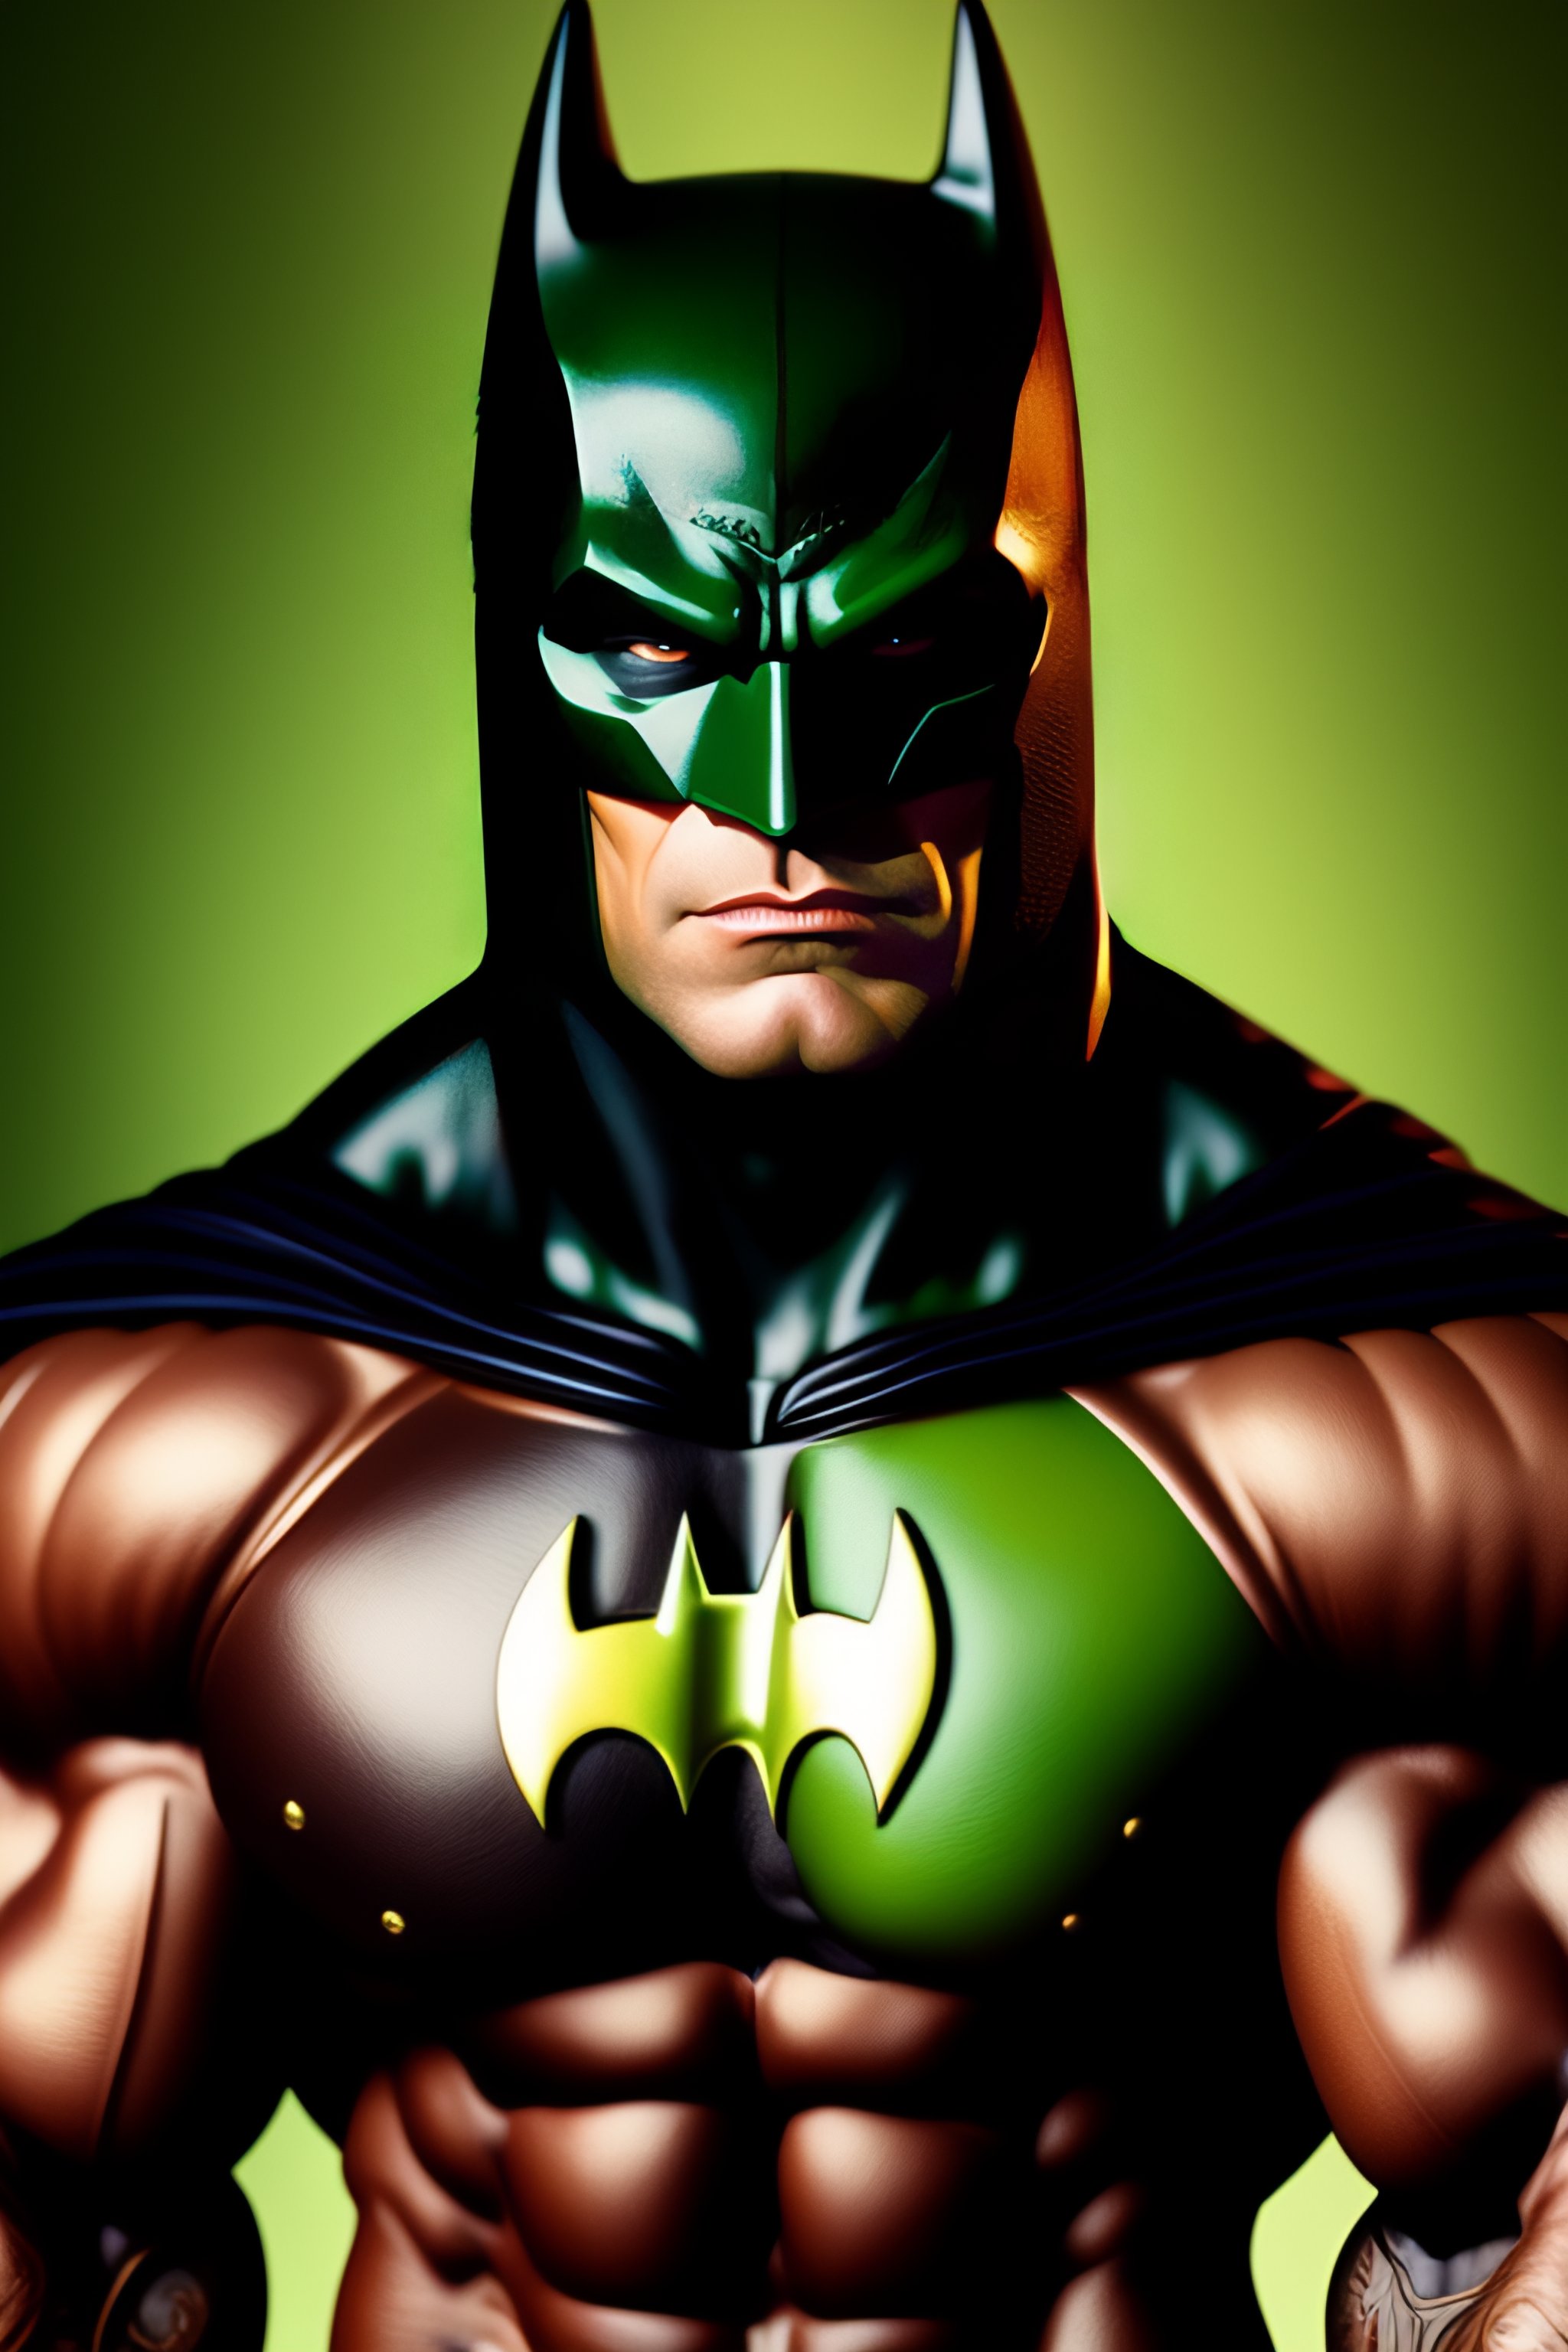 Lexica - An ultra realistic mix between hulk and batman